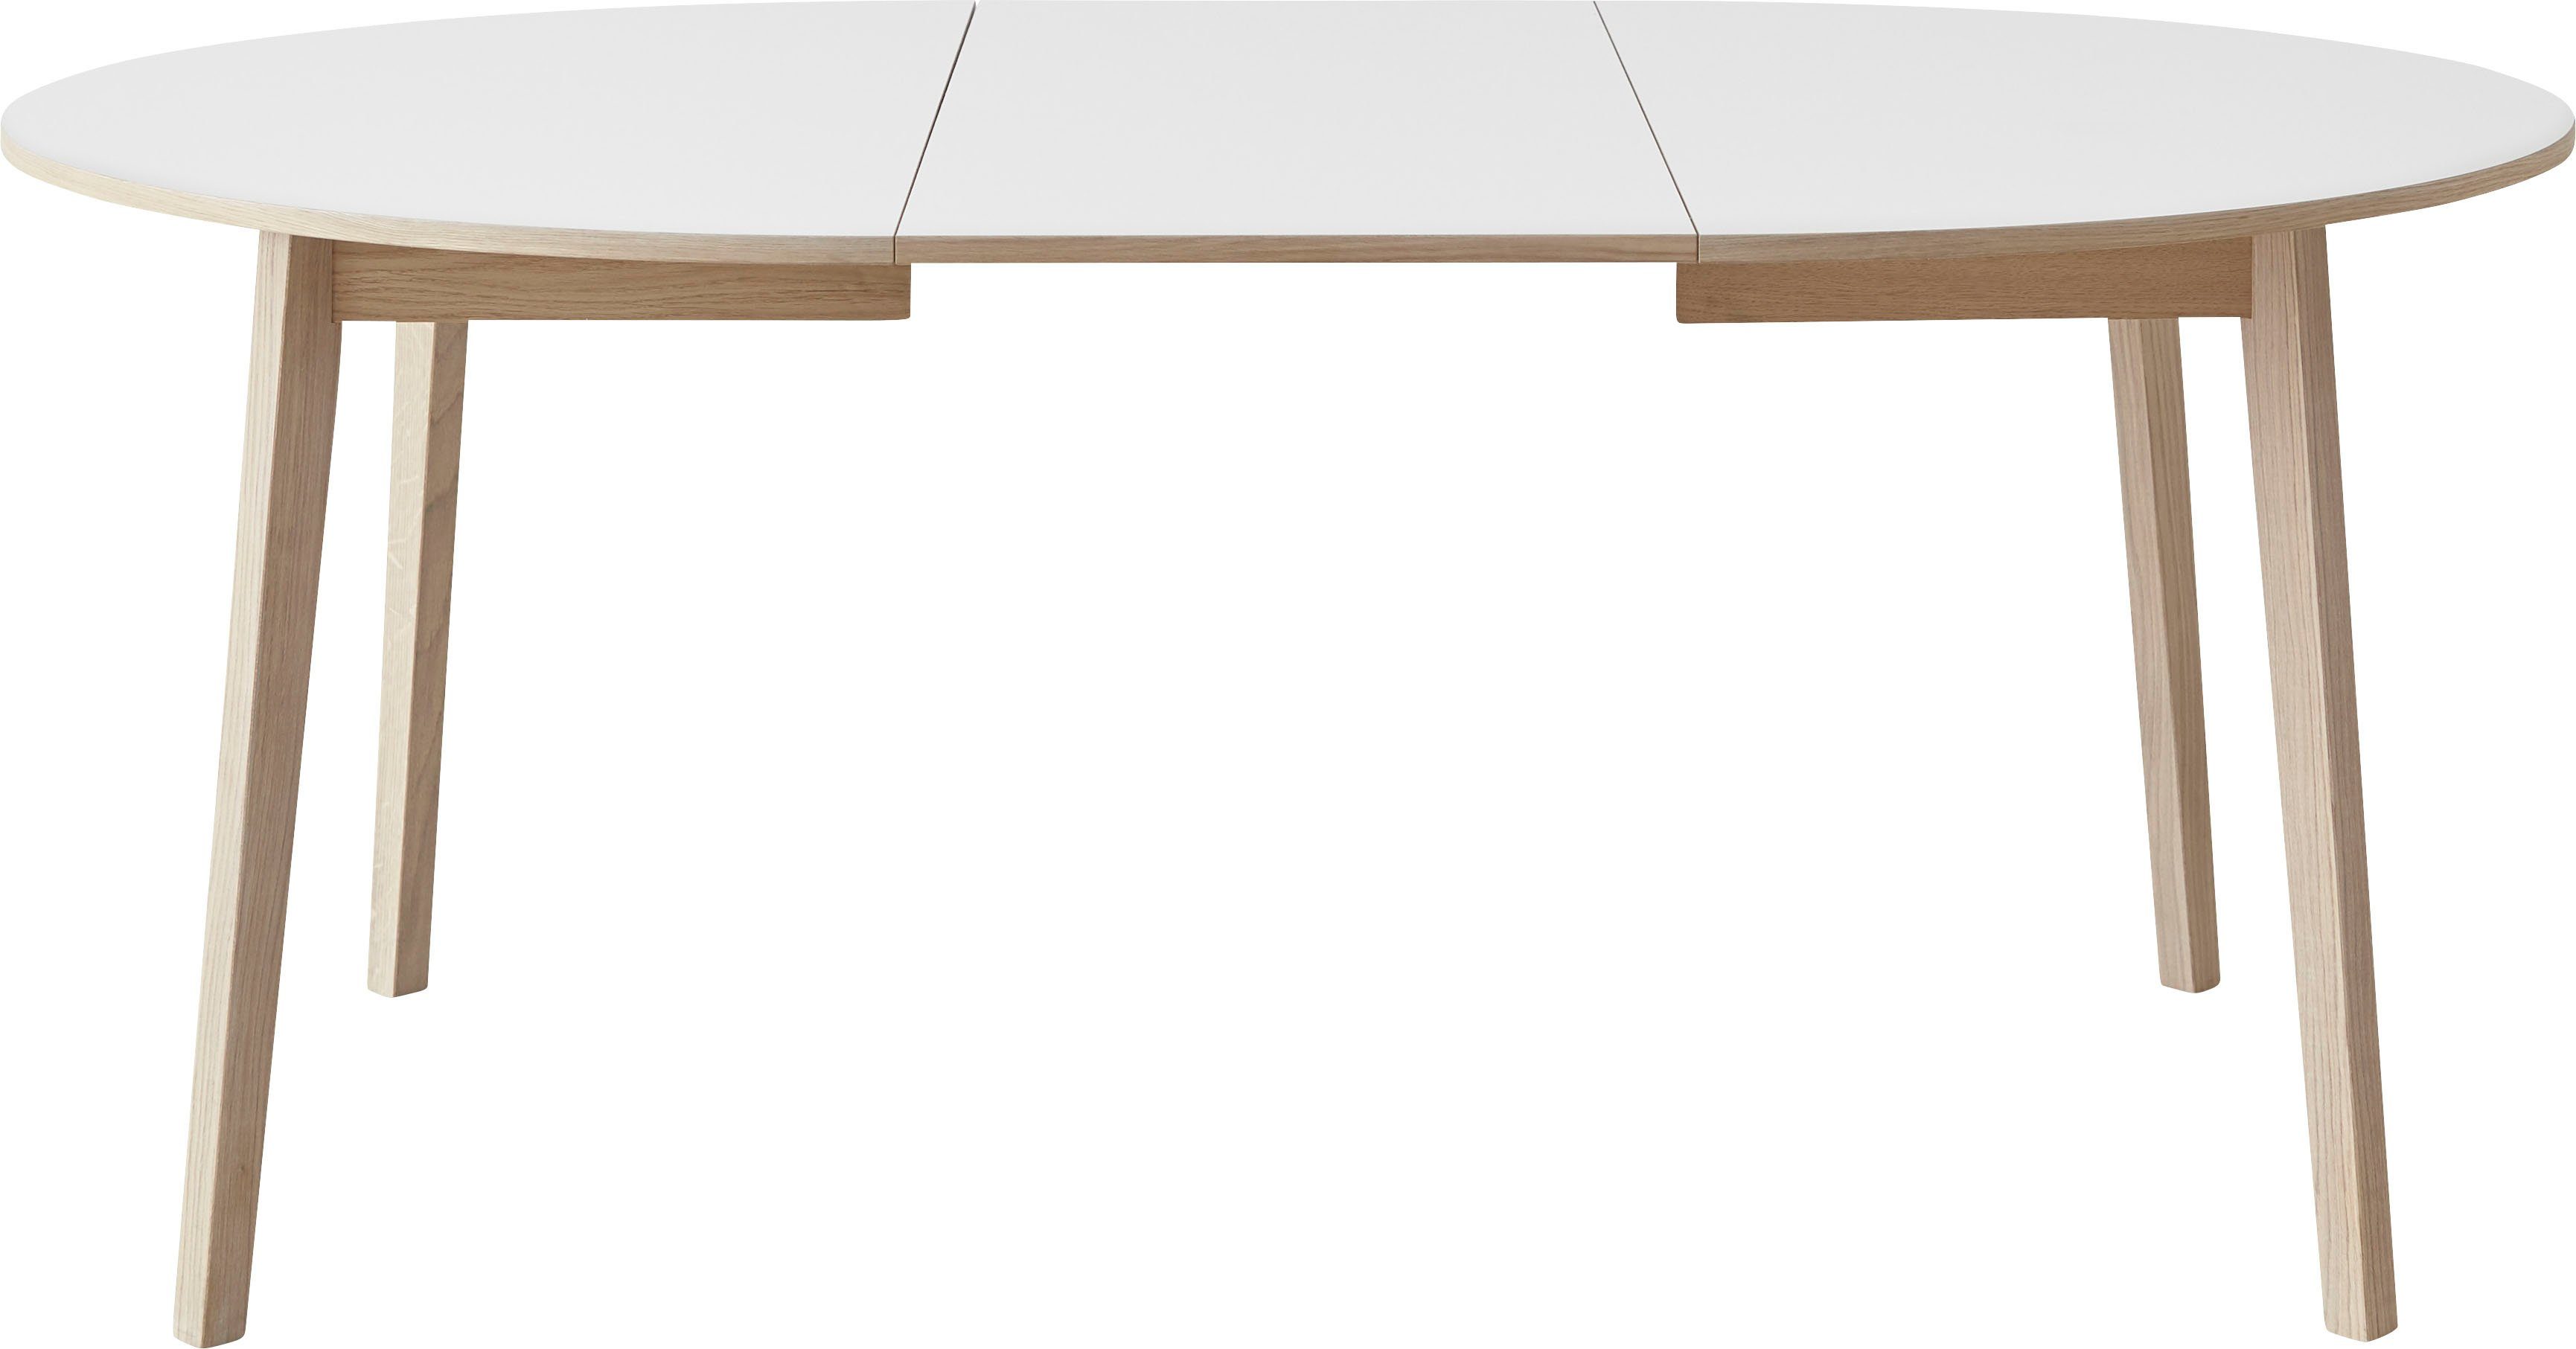 Hammel Furniture Esstisch Basic by aus 2 inklusive Einlegeplatten Weiß/Naturfarben Ø130/228 cm, Hammel Single, Gestell Massivholz